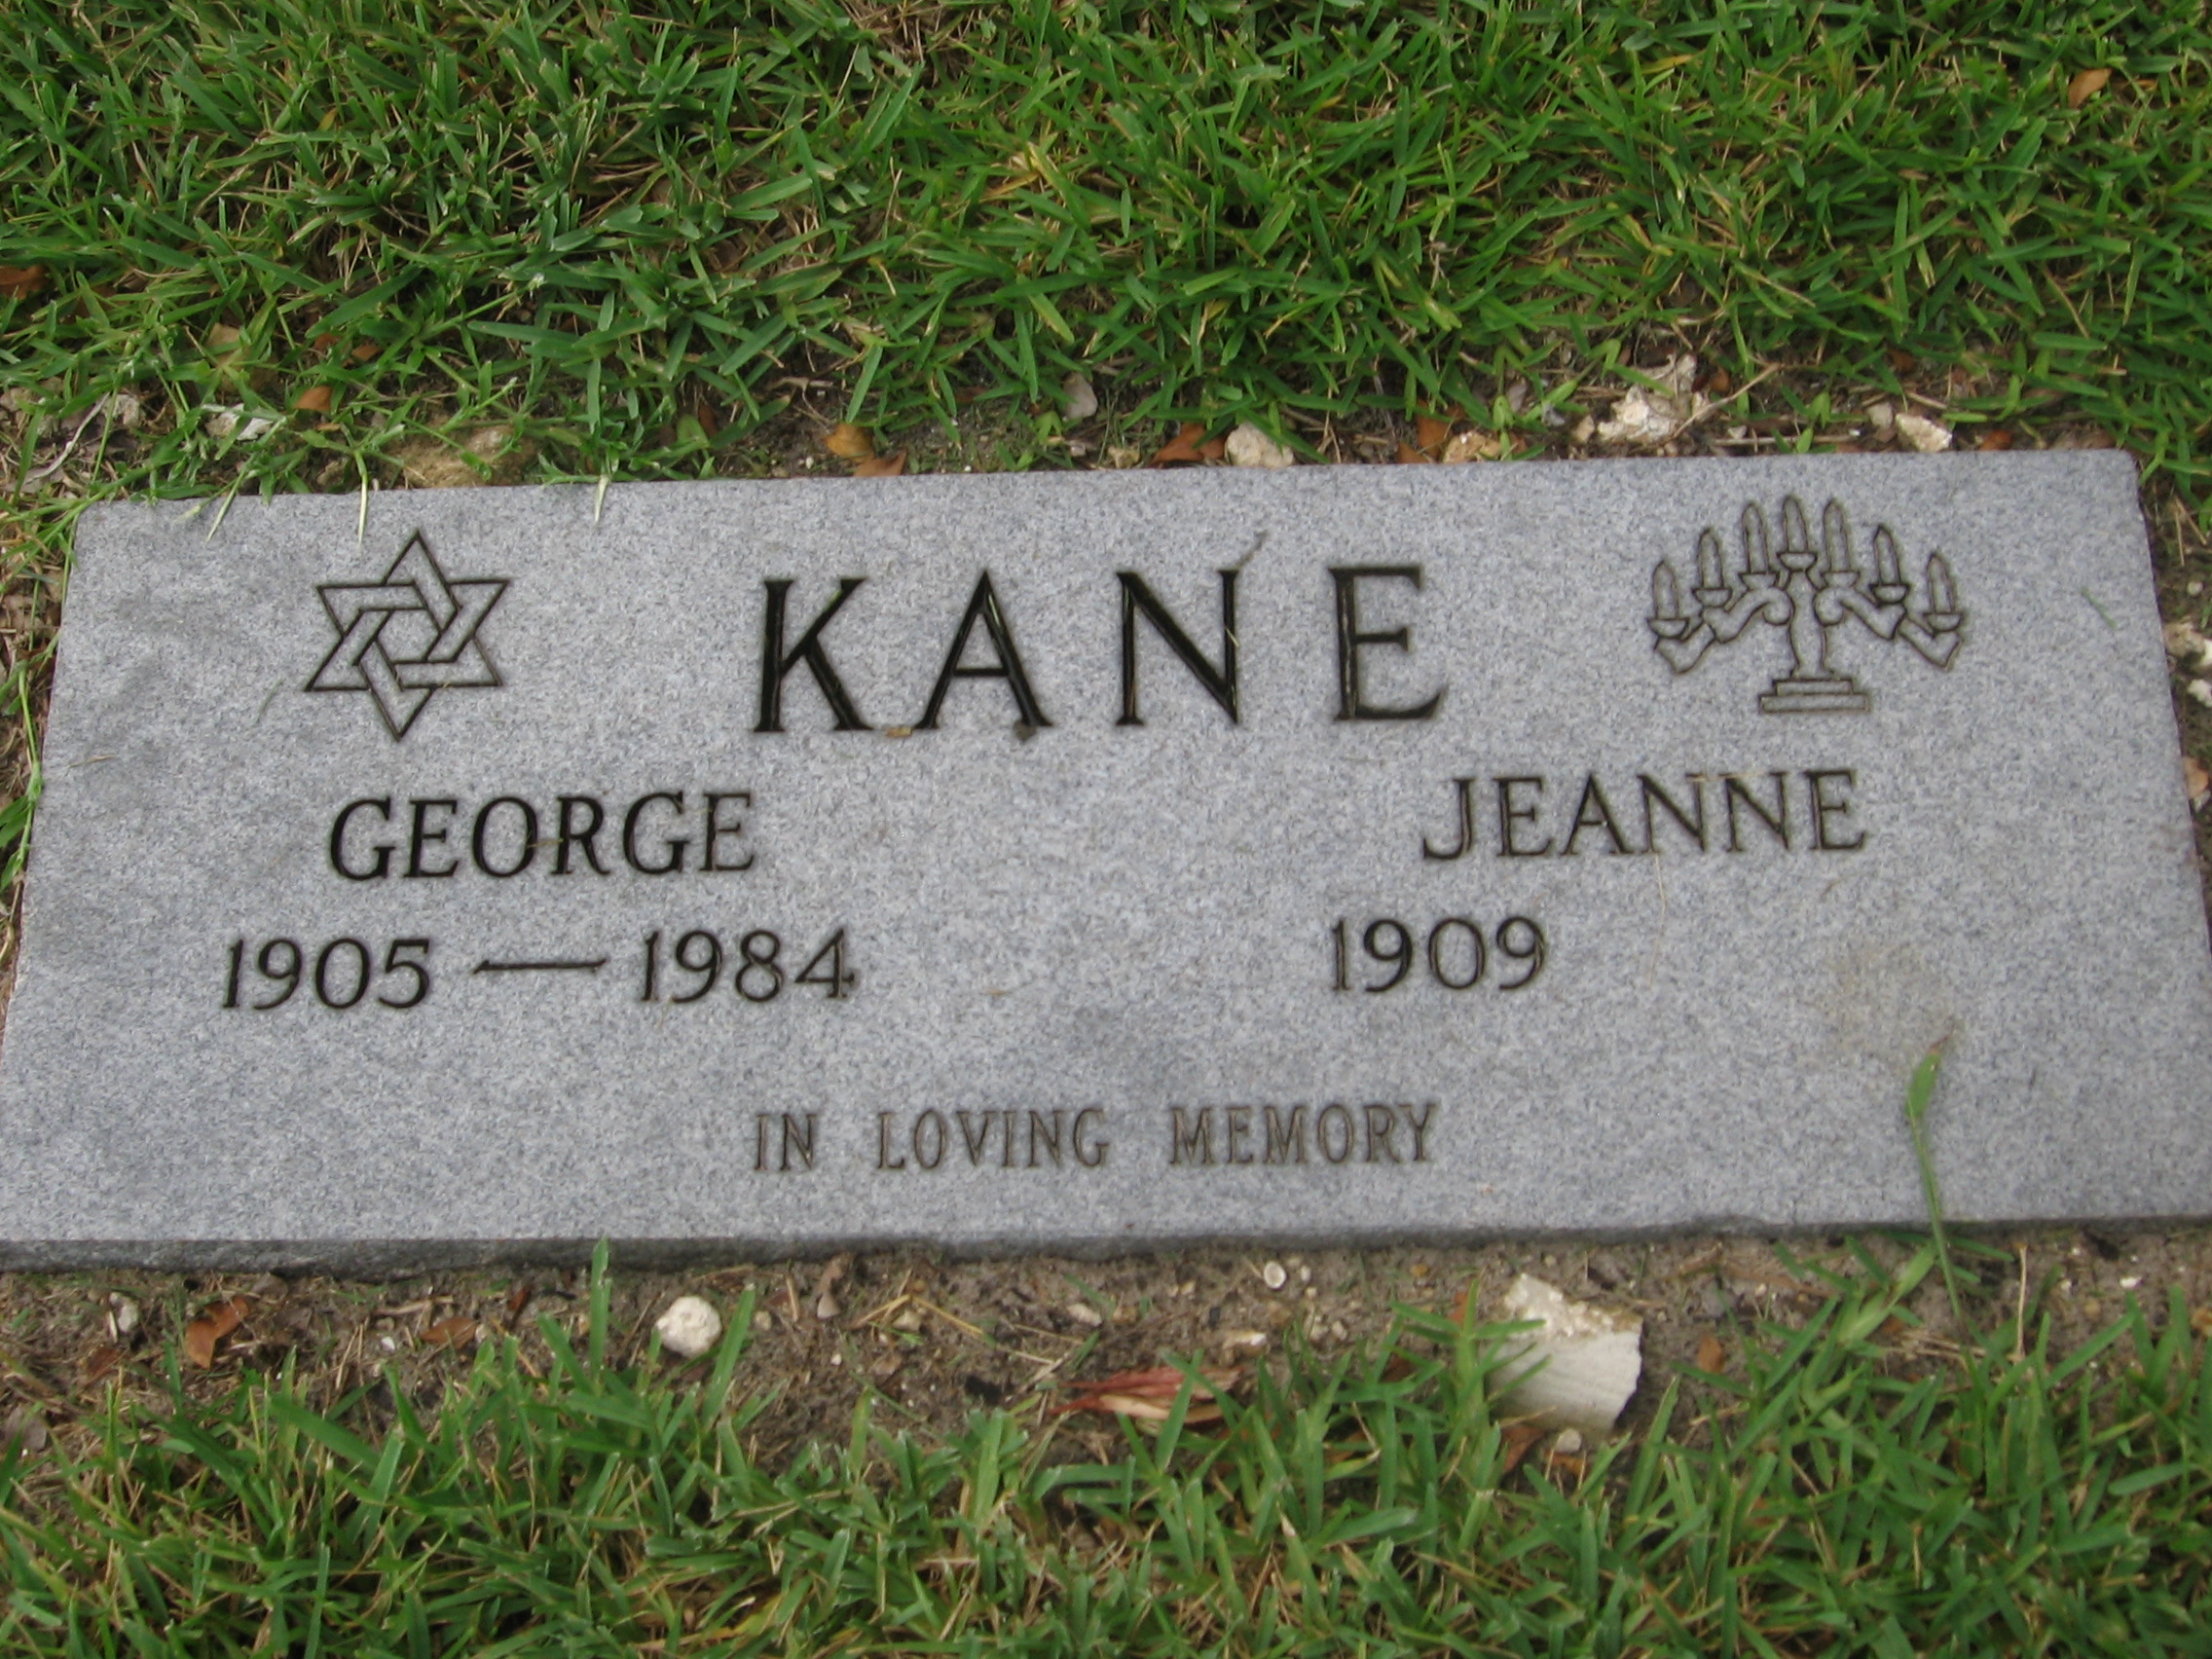 Jeanne Kane